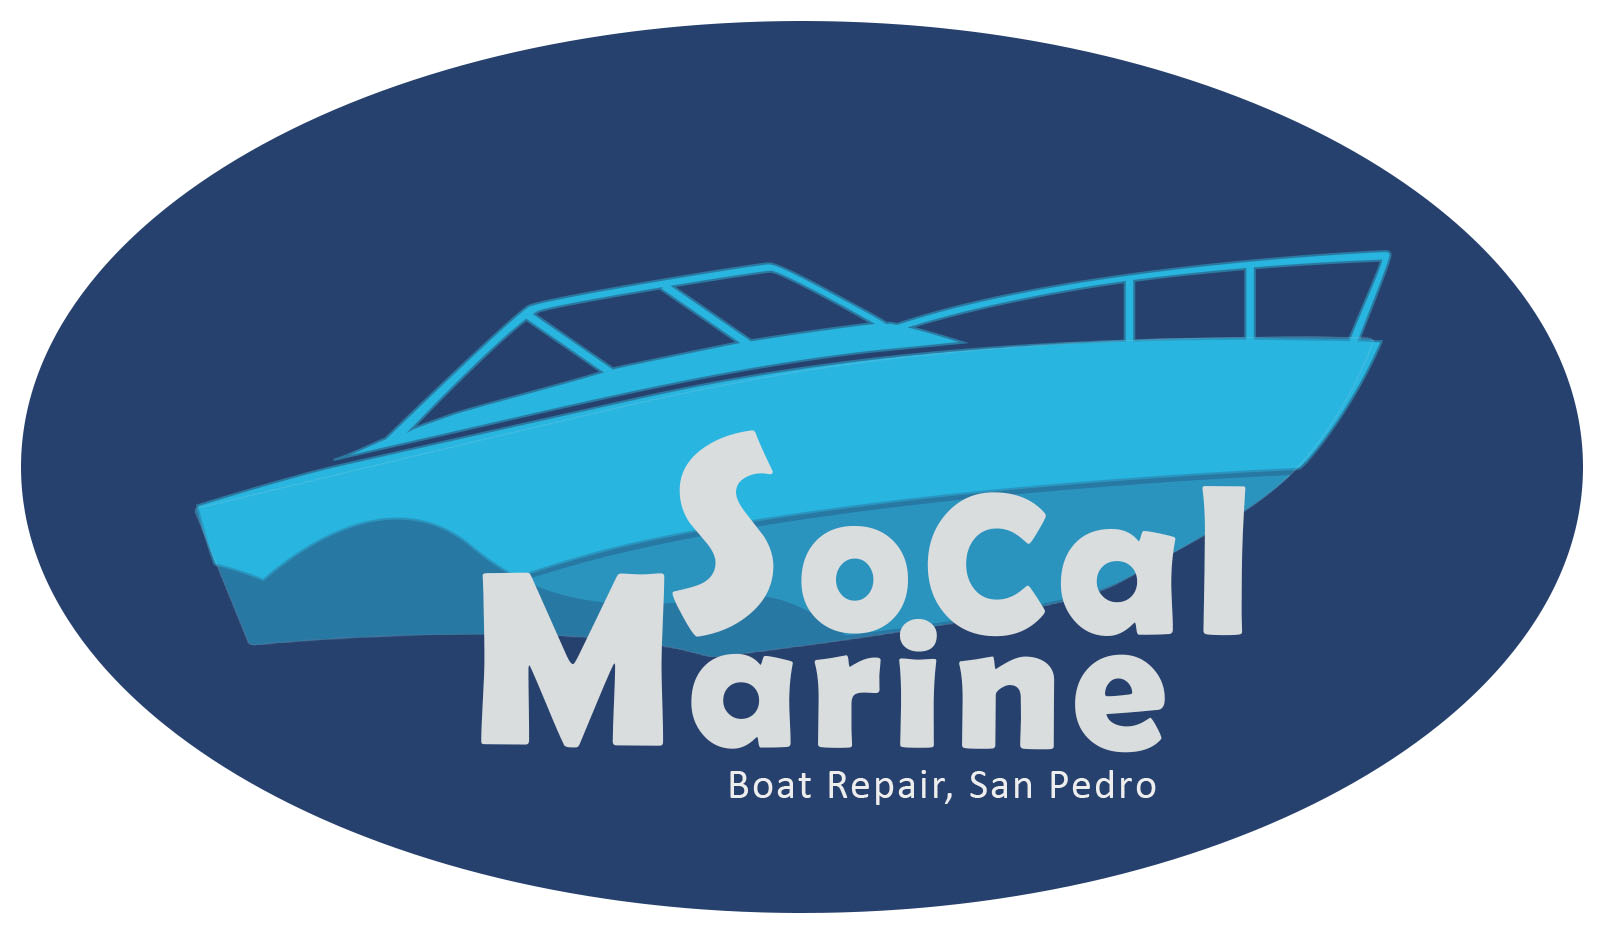 socal-marine-boat-repair-san-pedro-logo